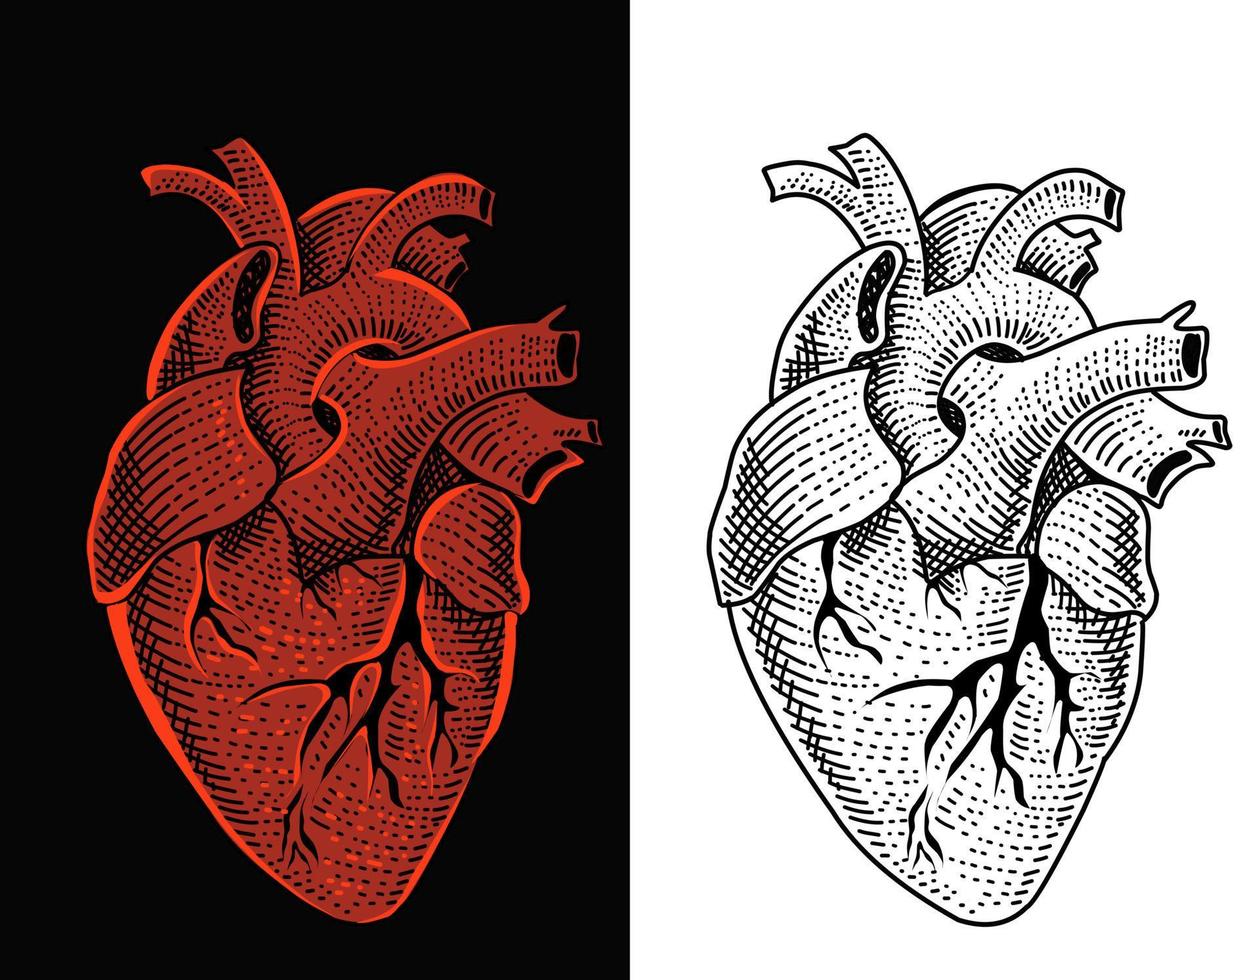 illustratie vector menselijk hart met gravure stijl